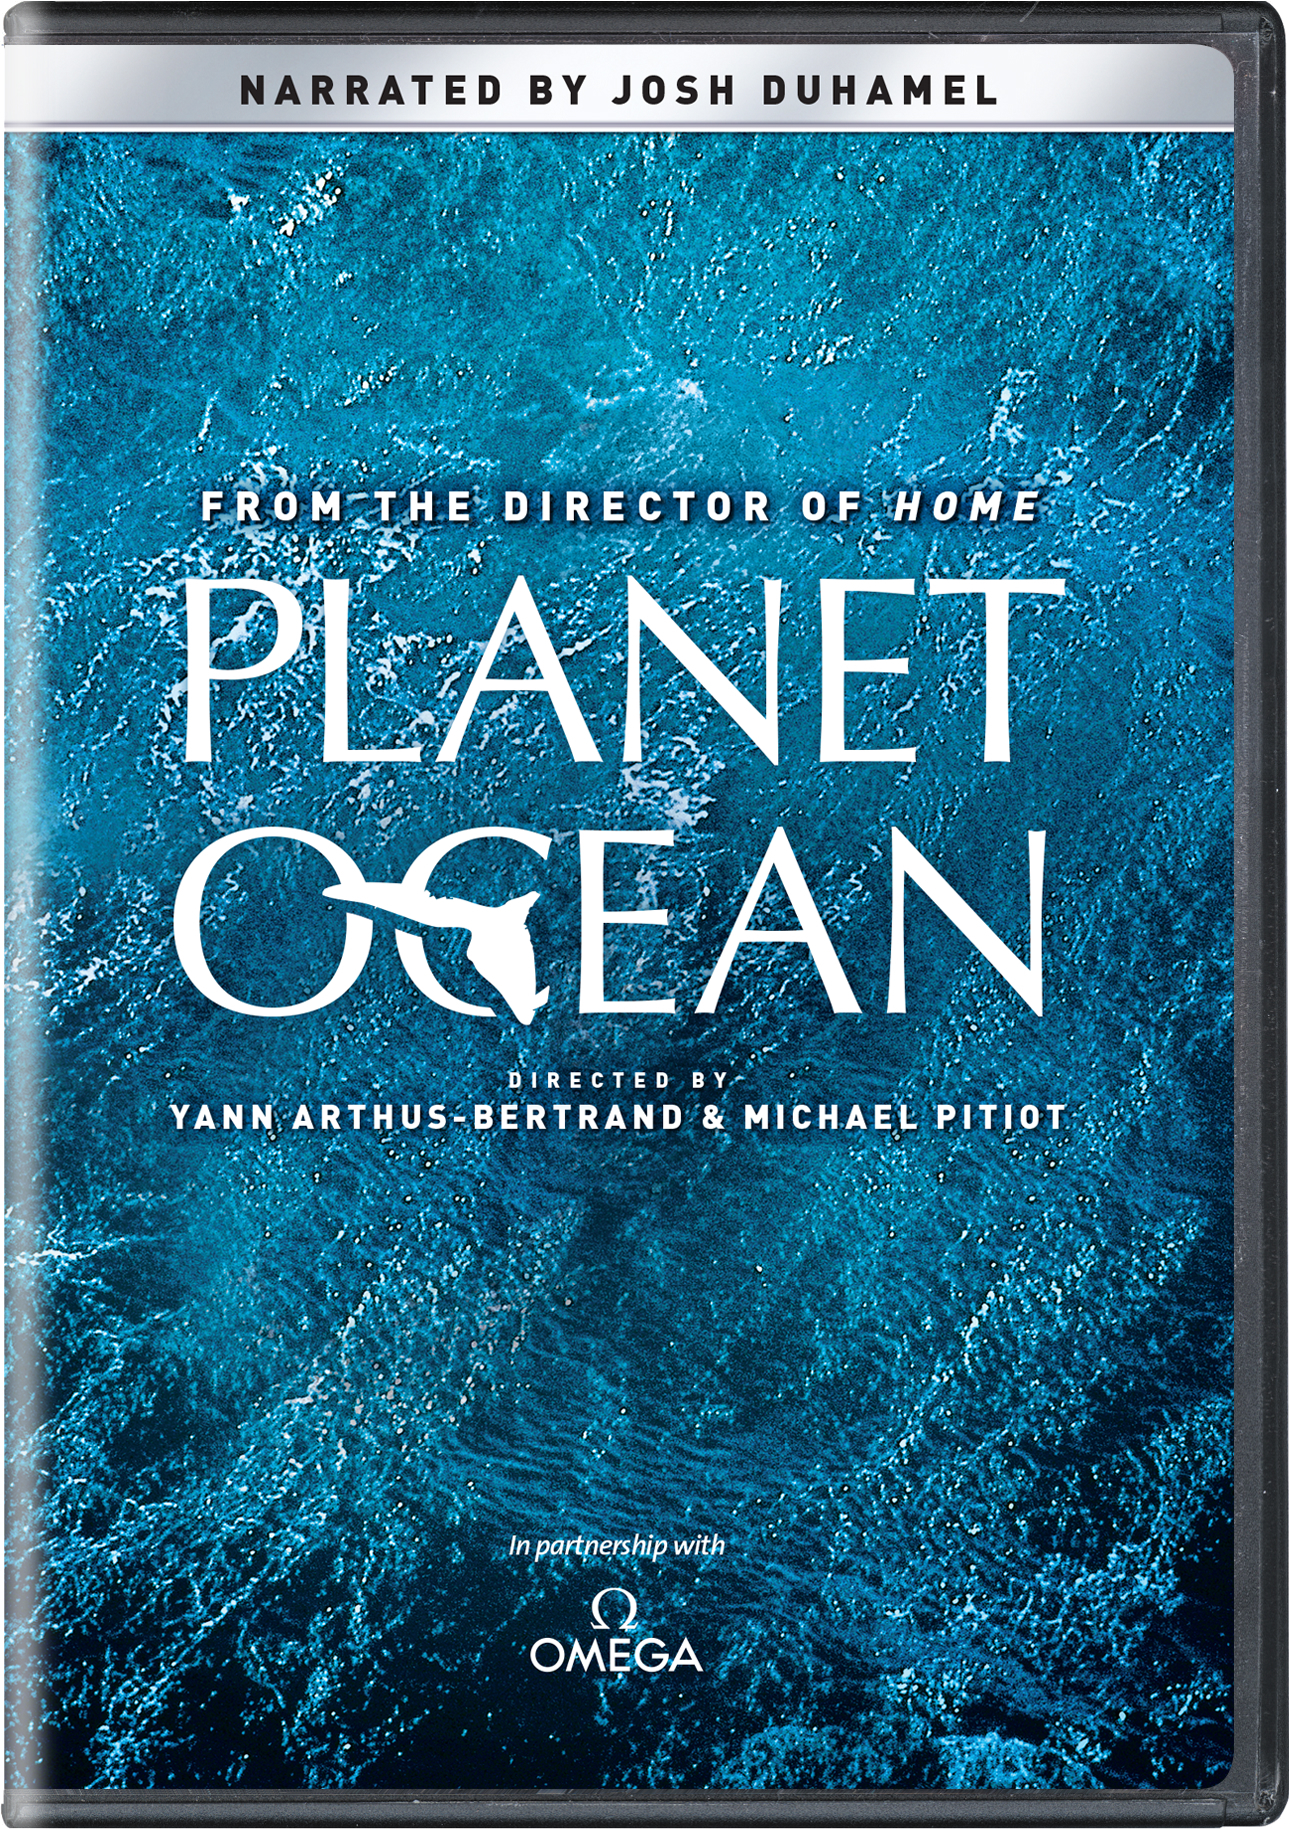 Planet Ocean - DVD [ 2012 ]  - Documentaries On DVD